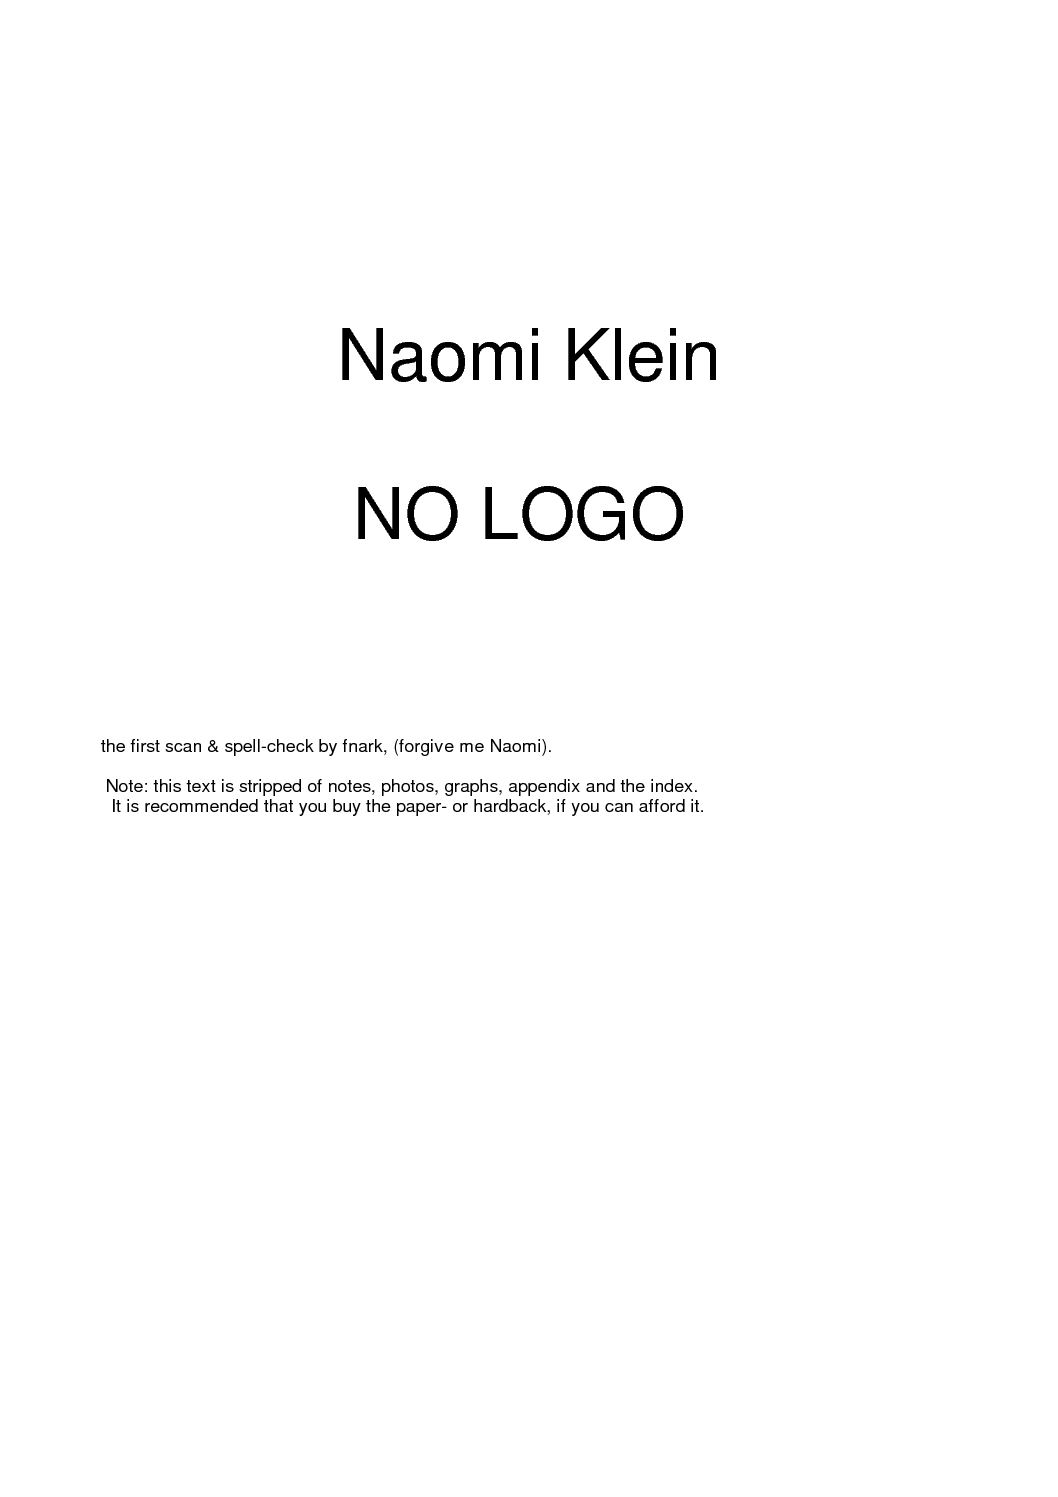 Naomi Klein: No Logo (2002, Picador)